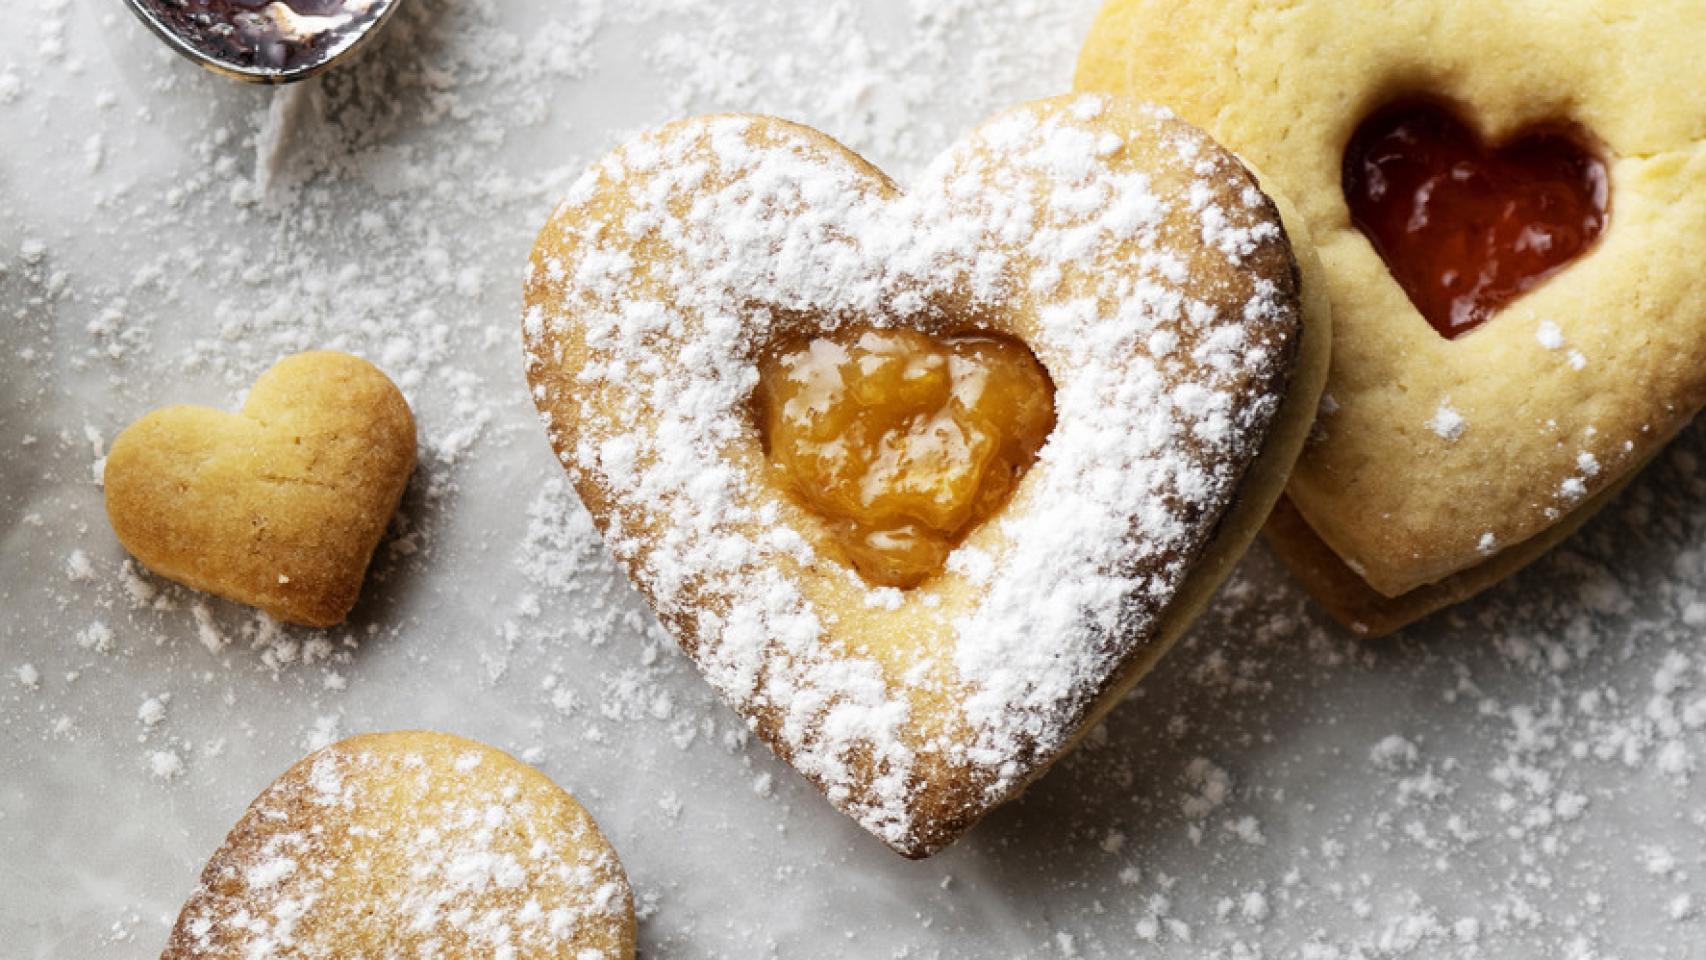 No son galletas y tampoco son pastas: el dulce que se hace en Oviedo y enamora a todos